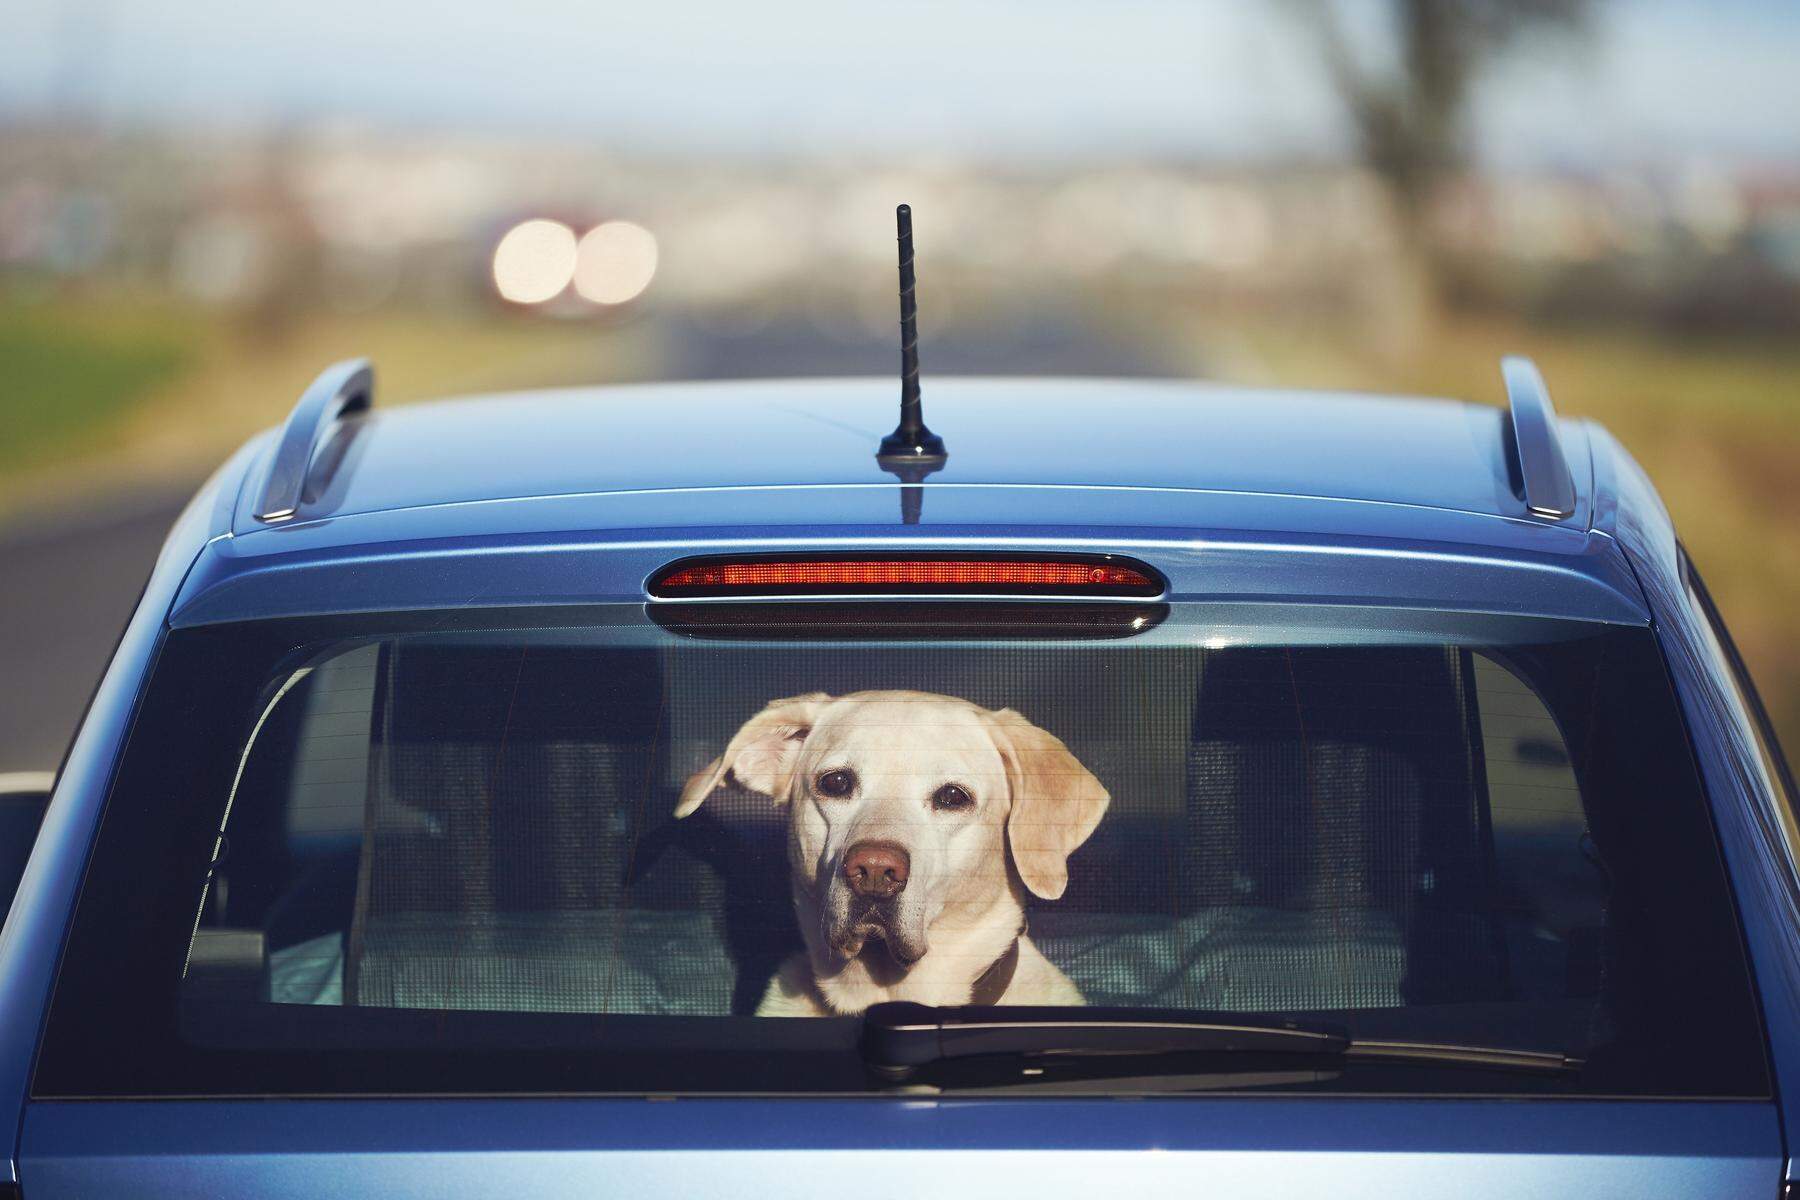 Hund bei Hitze im Auto - Was kann ich tun - darf ich Scheibe einschlagen?